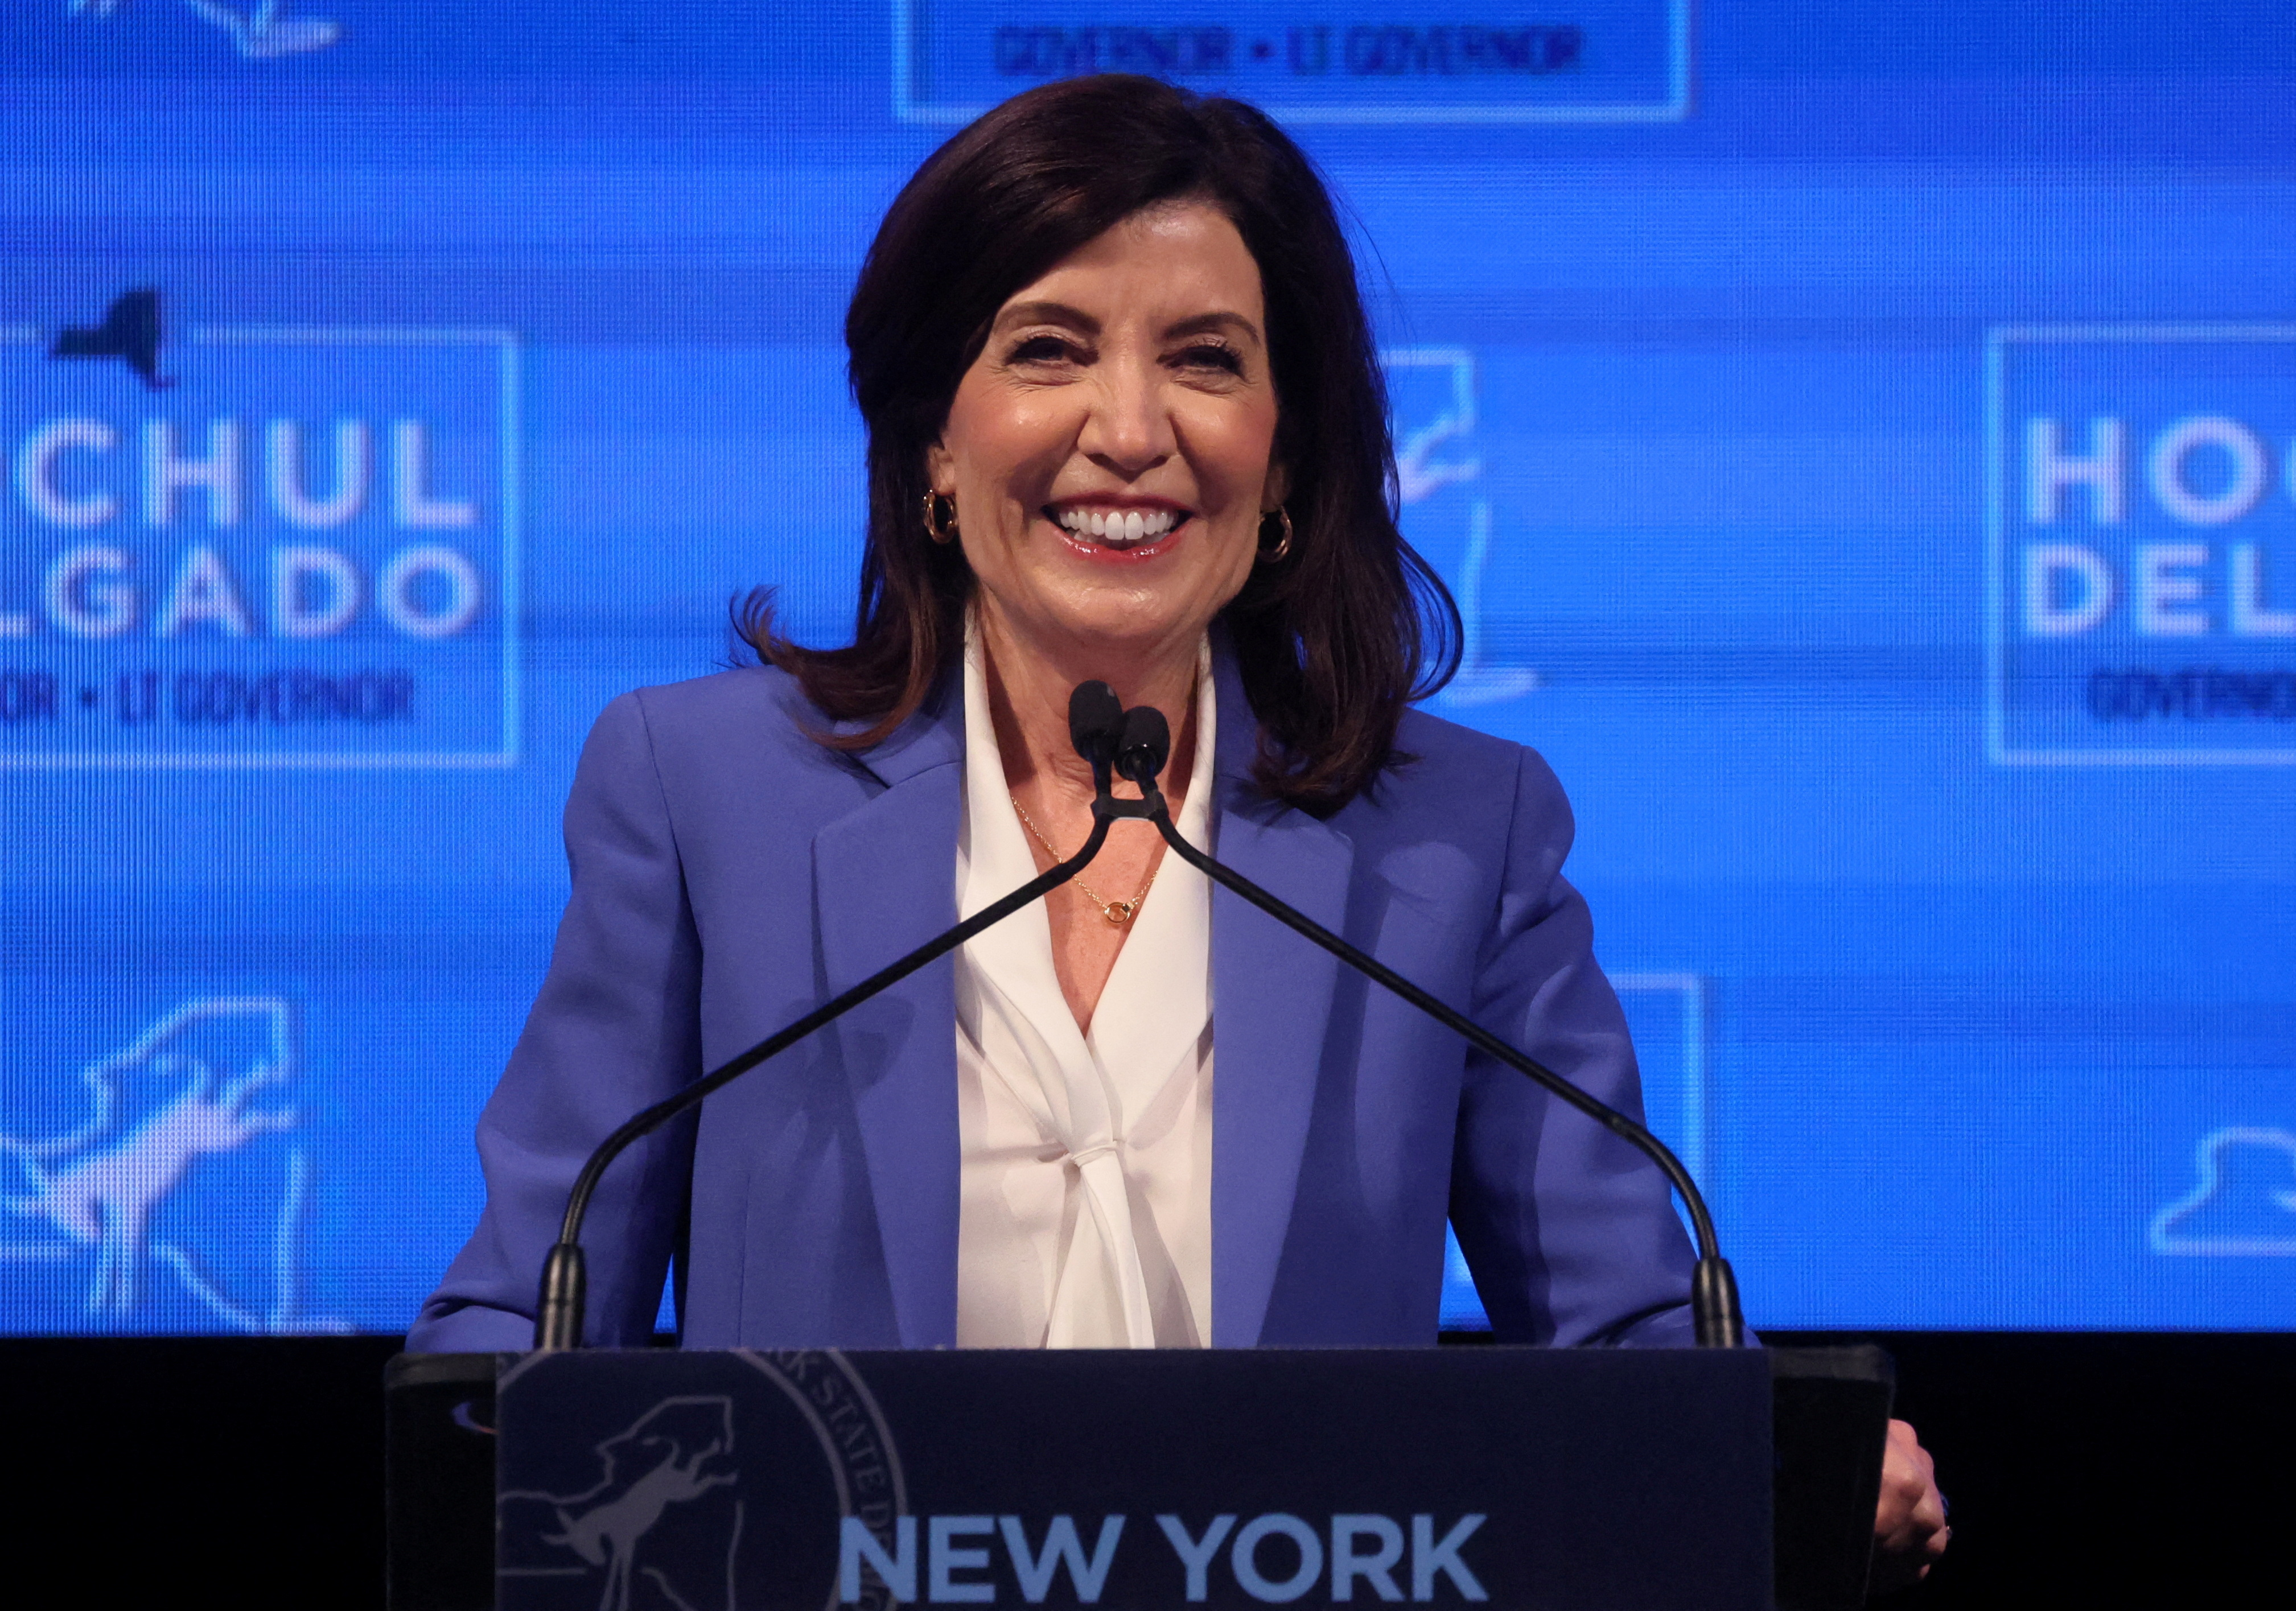 La demócrata Kathy Hochul se convirtió en la primera mujer electa que gobierne Nueva York. (REUTERS/Brendan McDermid)